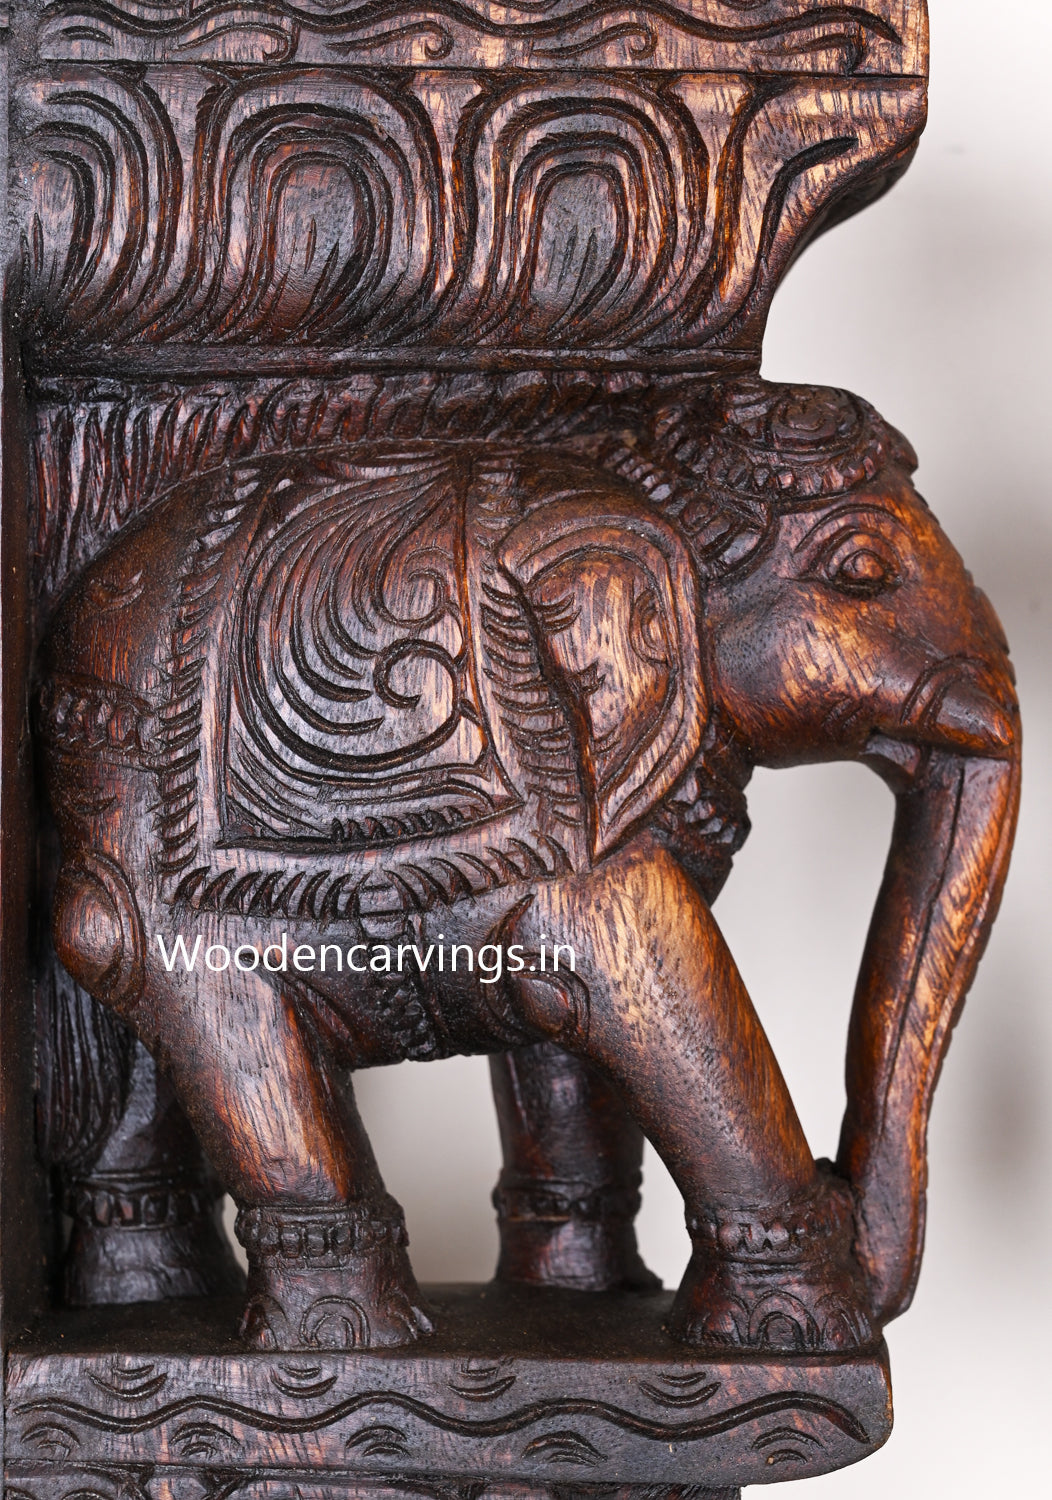 Light Weight Beautiful Art Work of Standing Paired Elephants Hooks Fixed Wooden Handmade Wall Brackets 12"